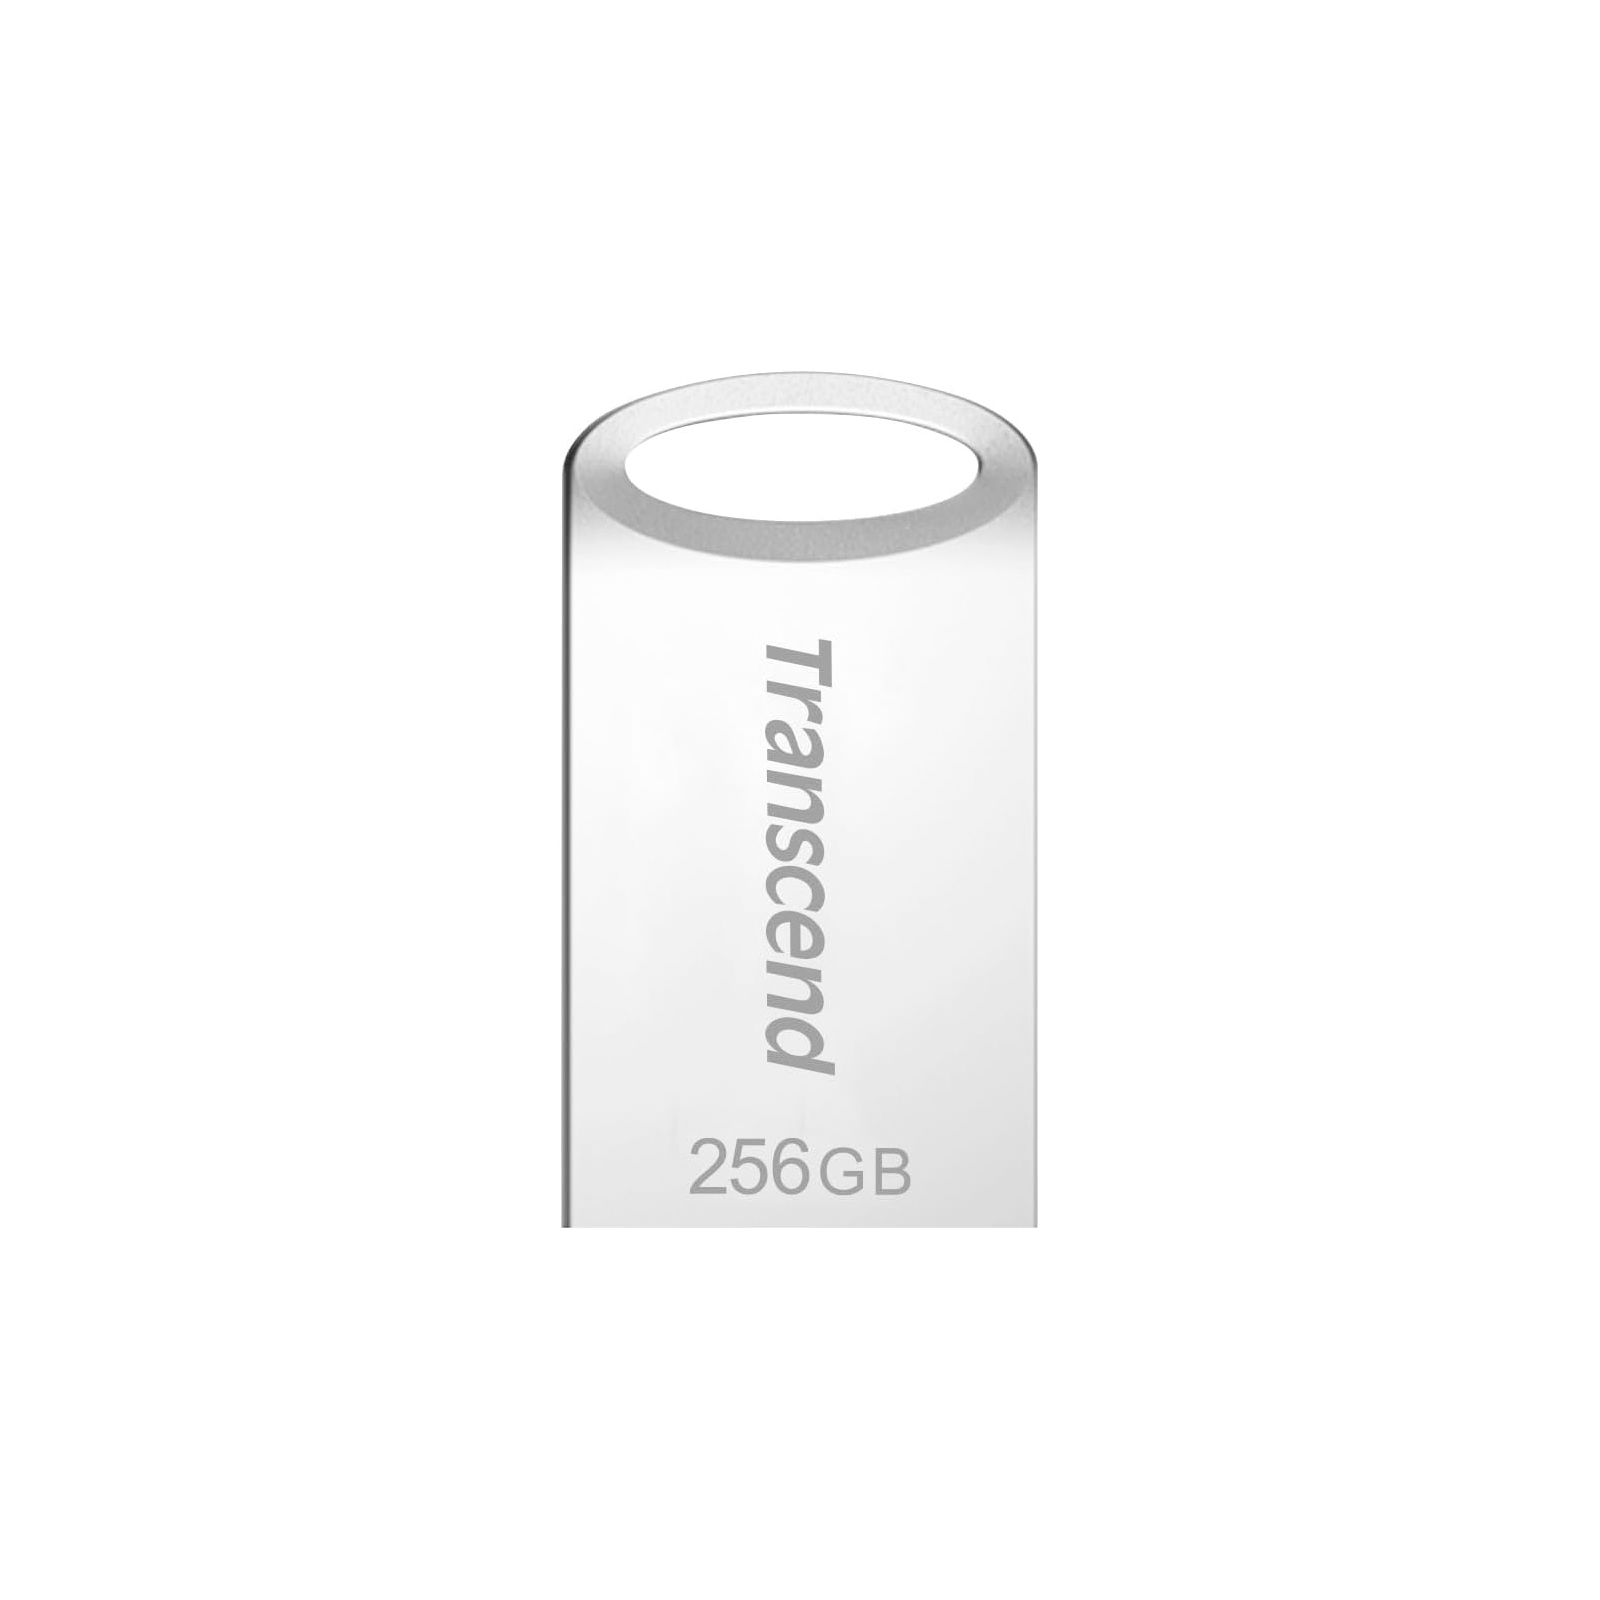 USB флеш накопитель Transcend 256GB JetFlash 710 Silver USB 3.1 (TS256GJF710S) изображение 2